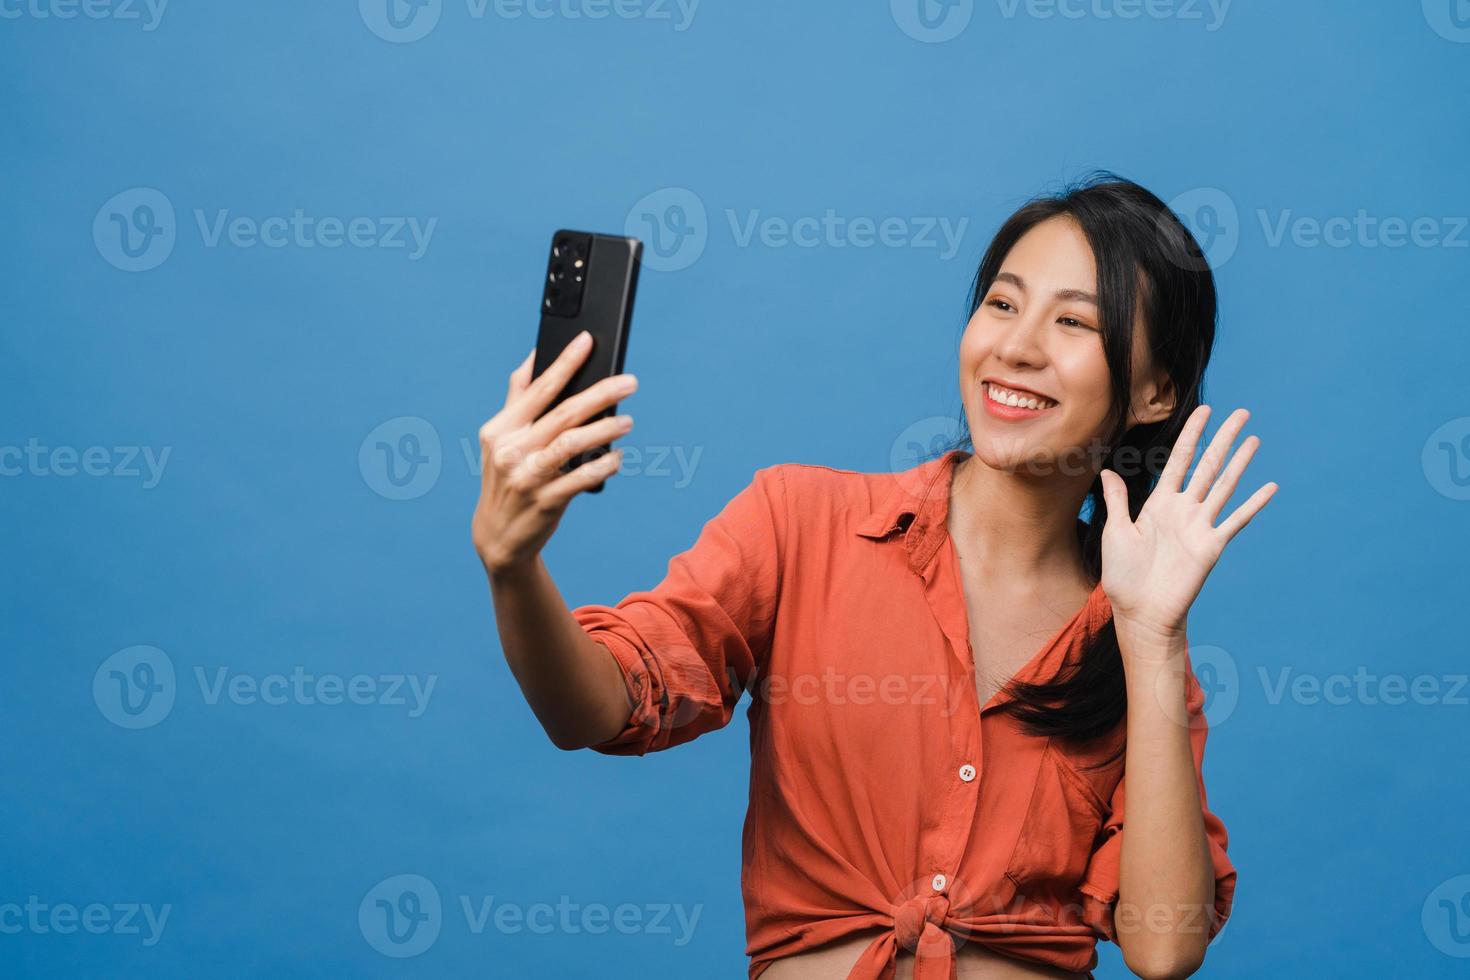 lachende schattige Aziatische vrouw selfie foto maken op slimme telefoon met positieve uitdrukking in casual kleding en staan geïsoleerd op blauwe achtergrond. gelukkige schattige blije vrouw verheugt zich over succes.